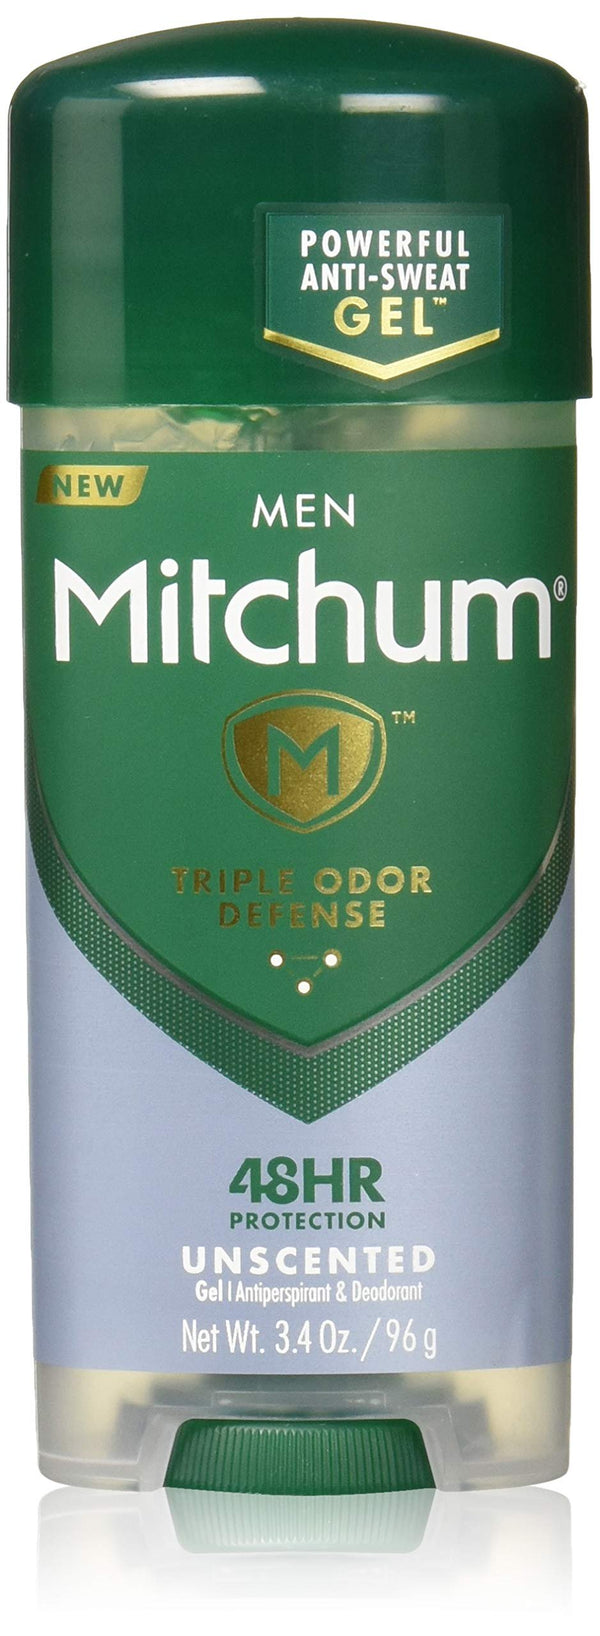 Mitchum Men Gel Antiperspirant Deodorant, Unscented, 3.4oz. - H&B Aisle